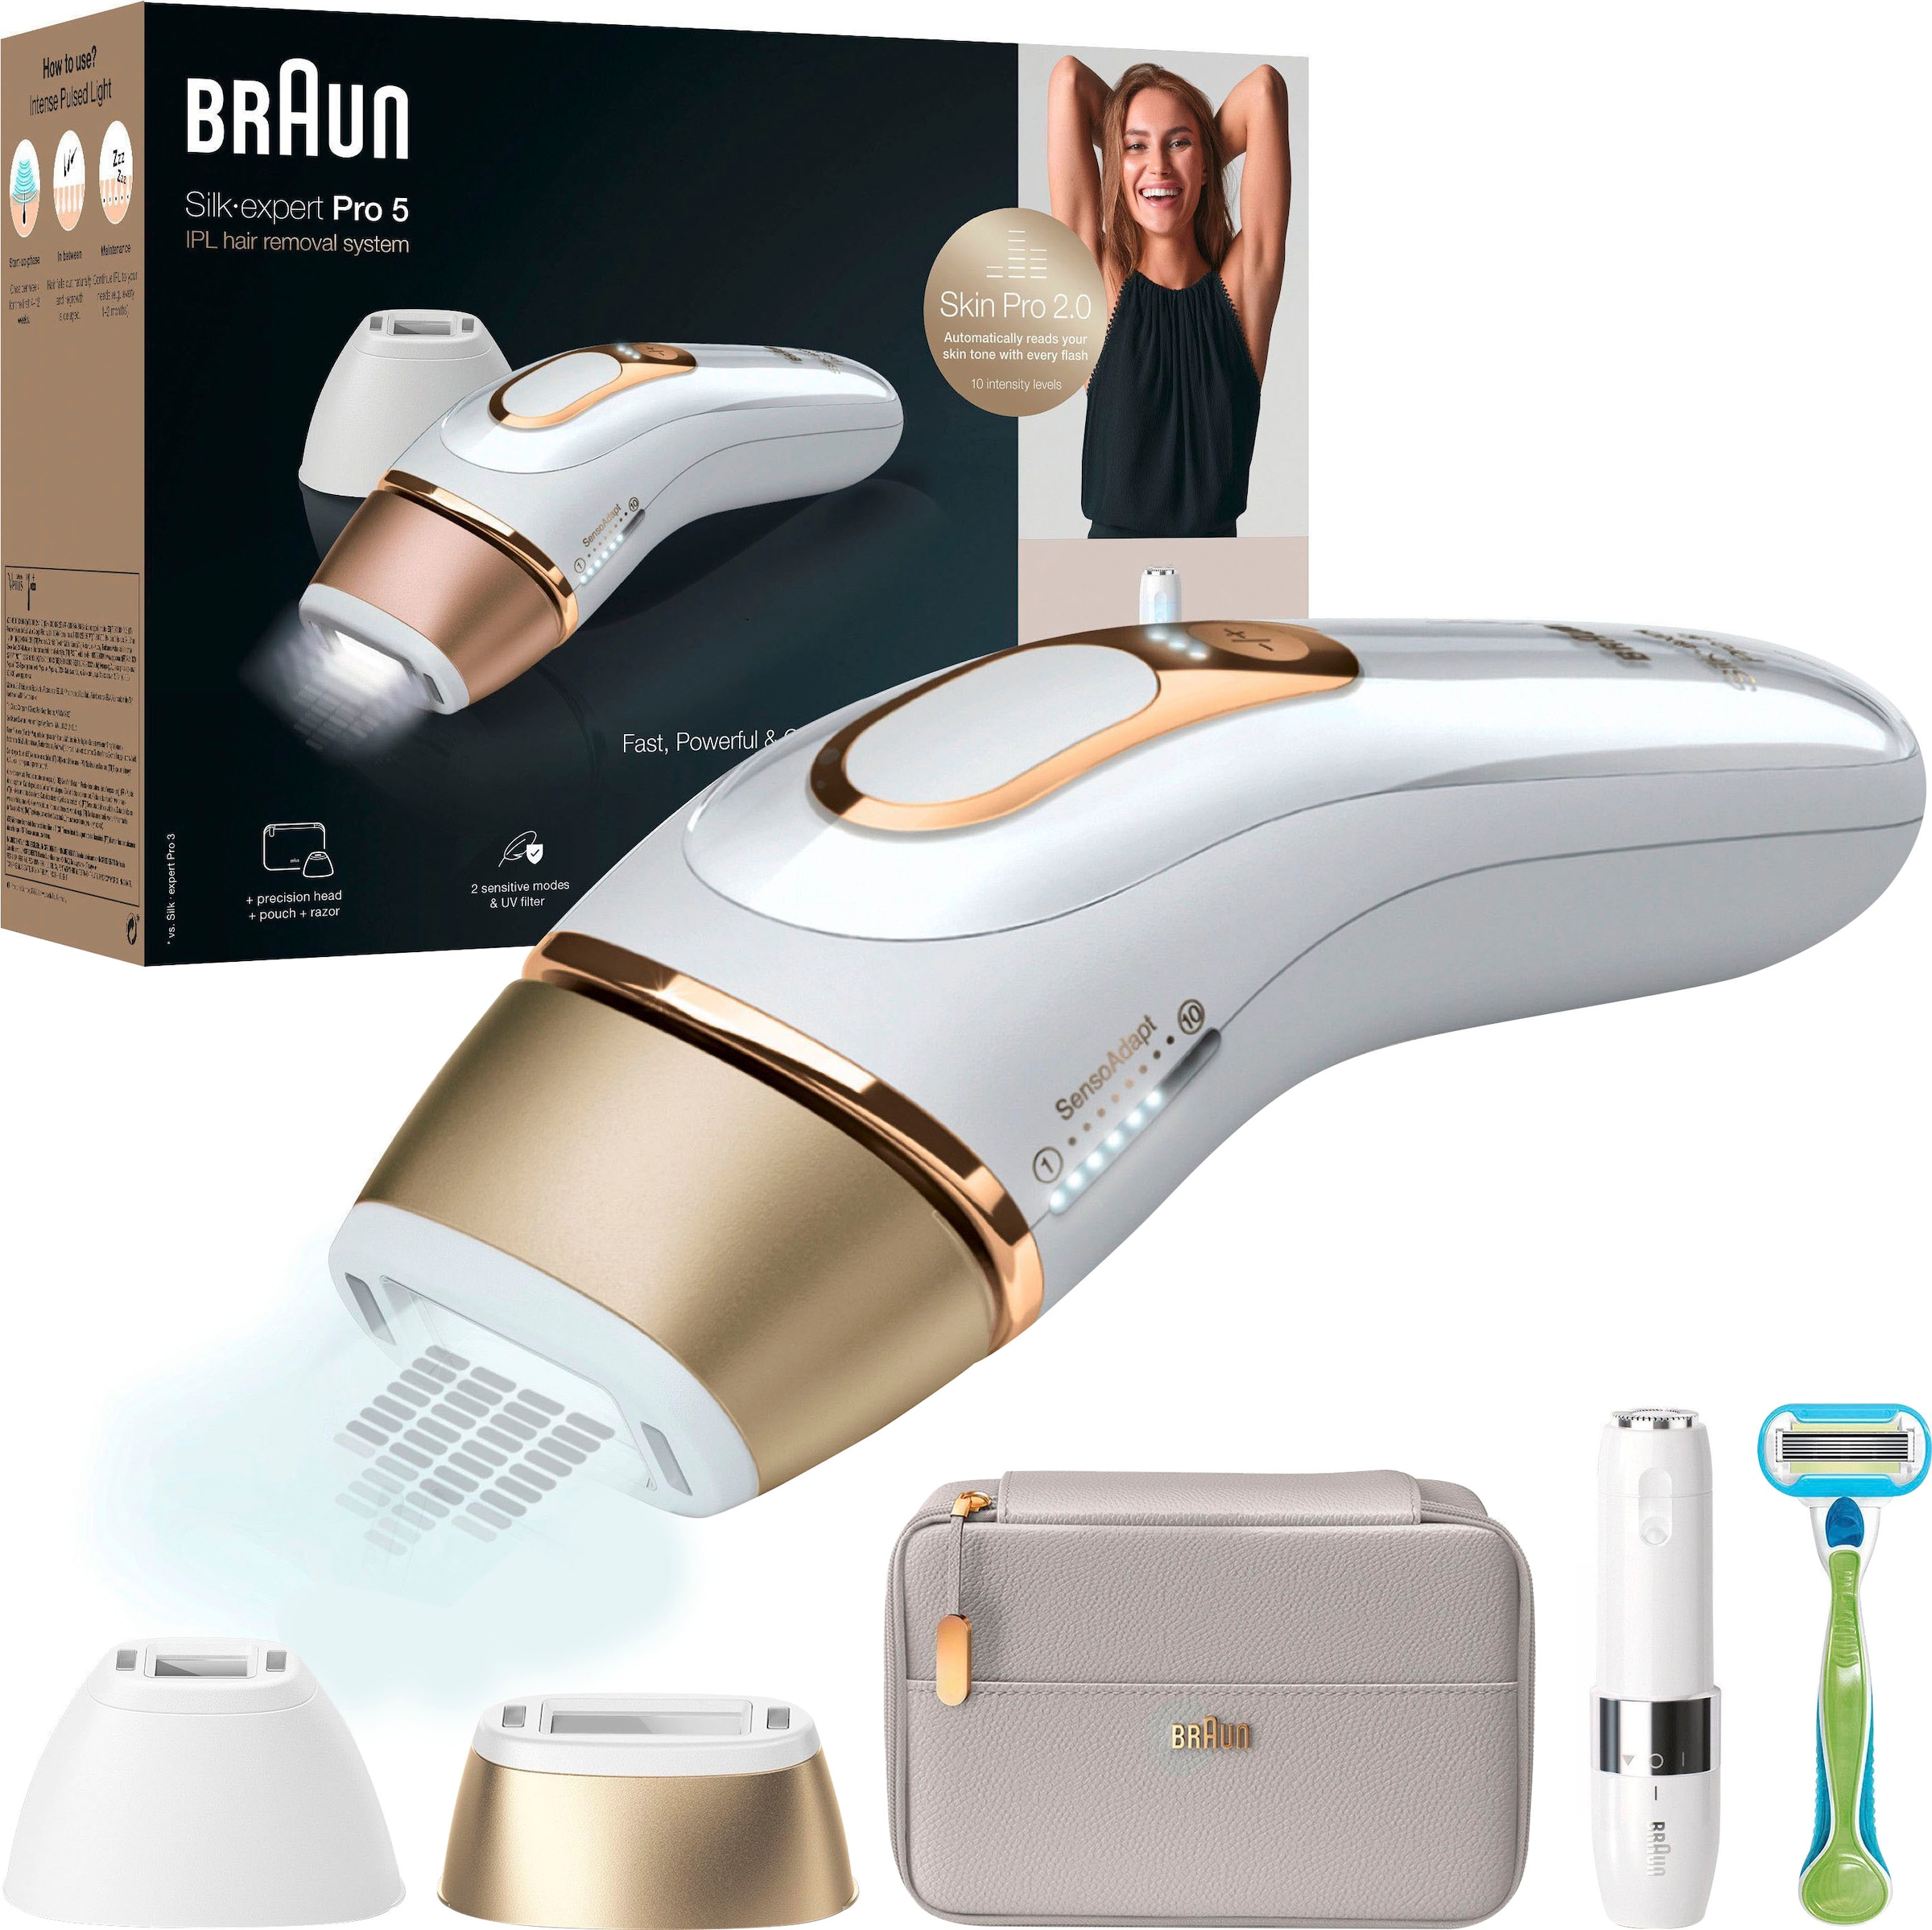 ♕ Braun 400.000 »Silk-Expert 5 versandkostenfrei Pro PL5159«, 2.0 Pro auf Skin IPL-Haarentferner Lichtimpulse, Sensor